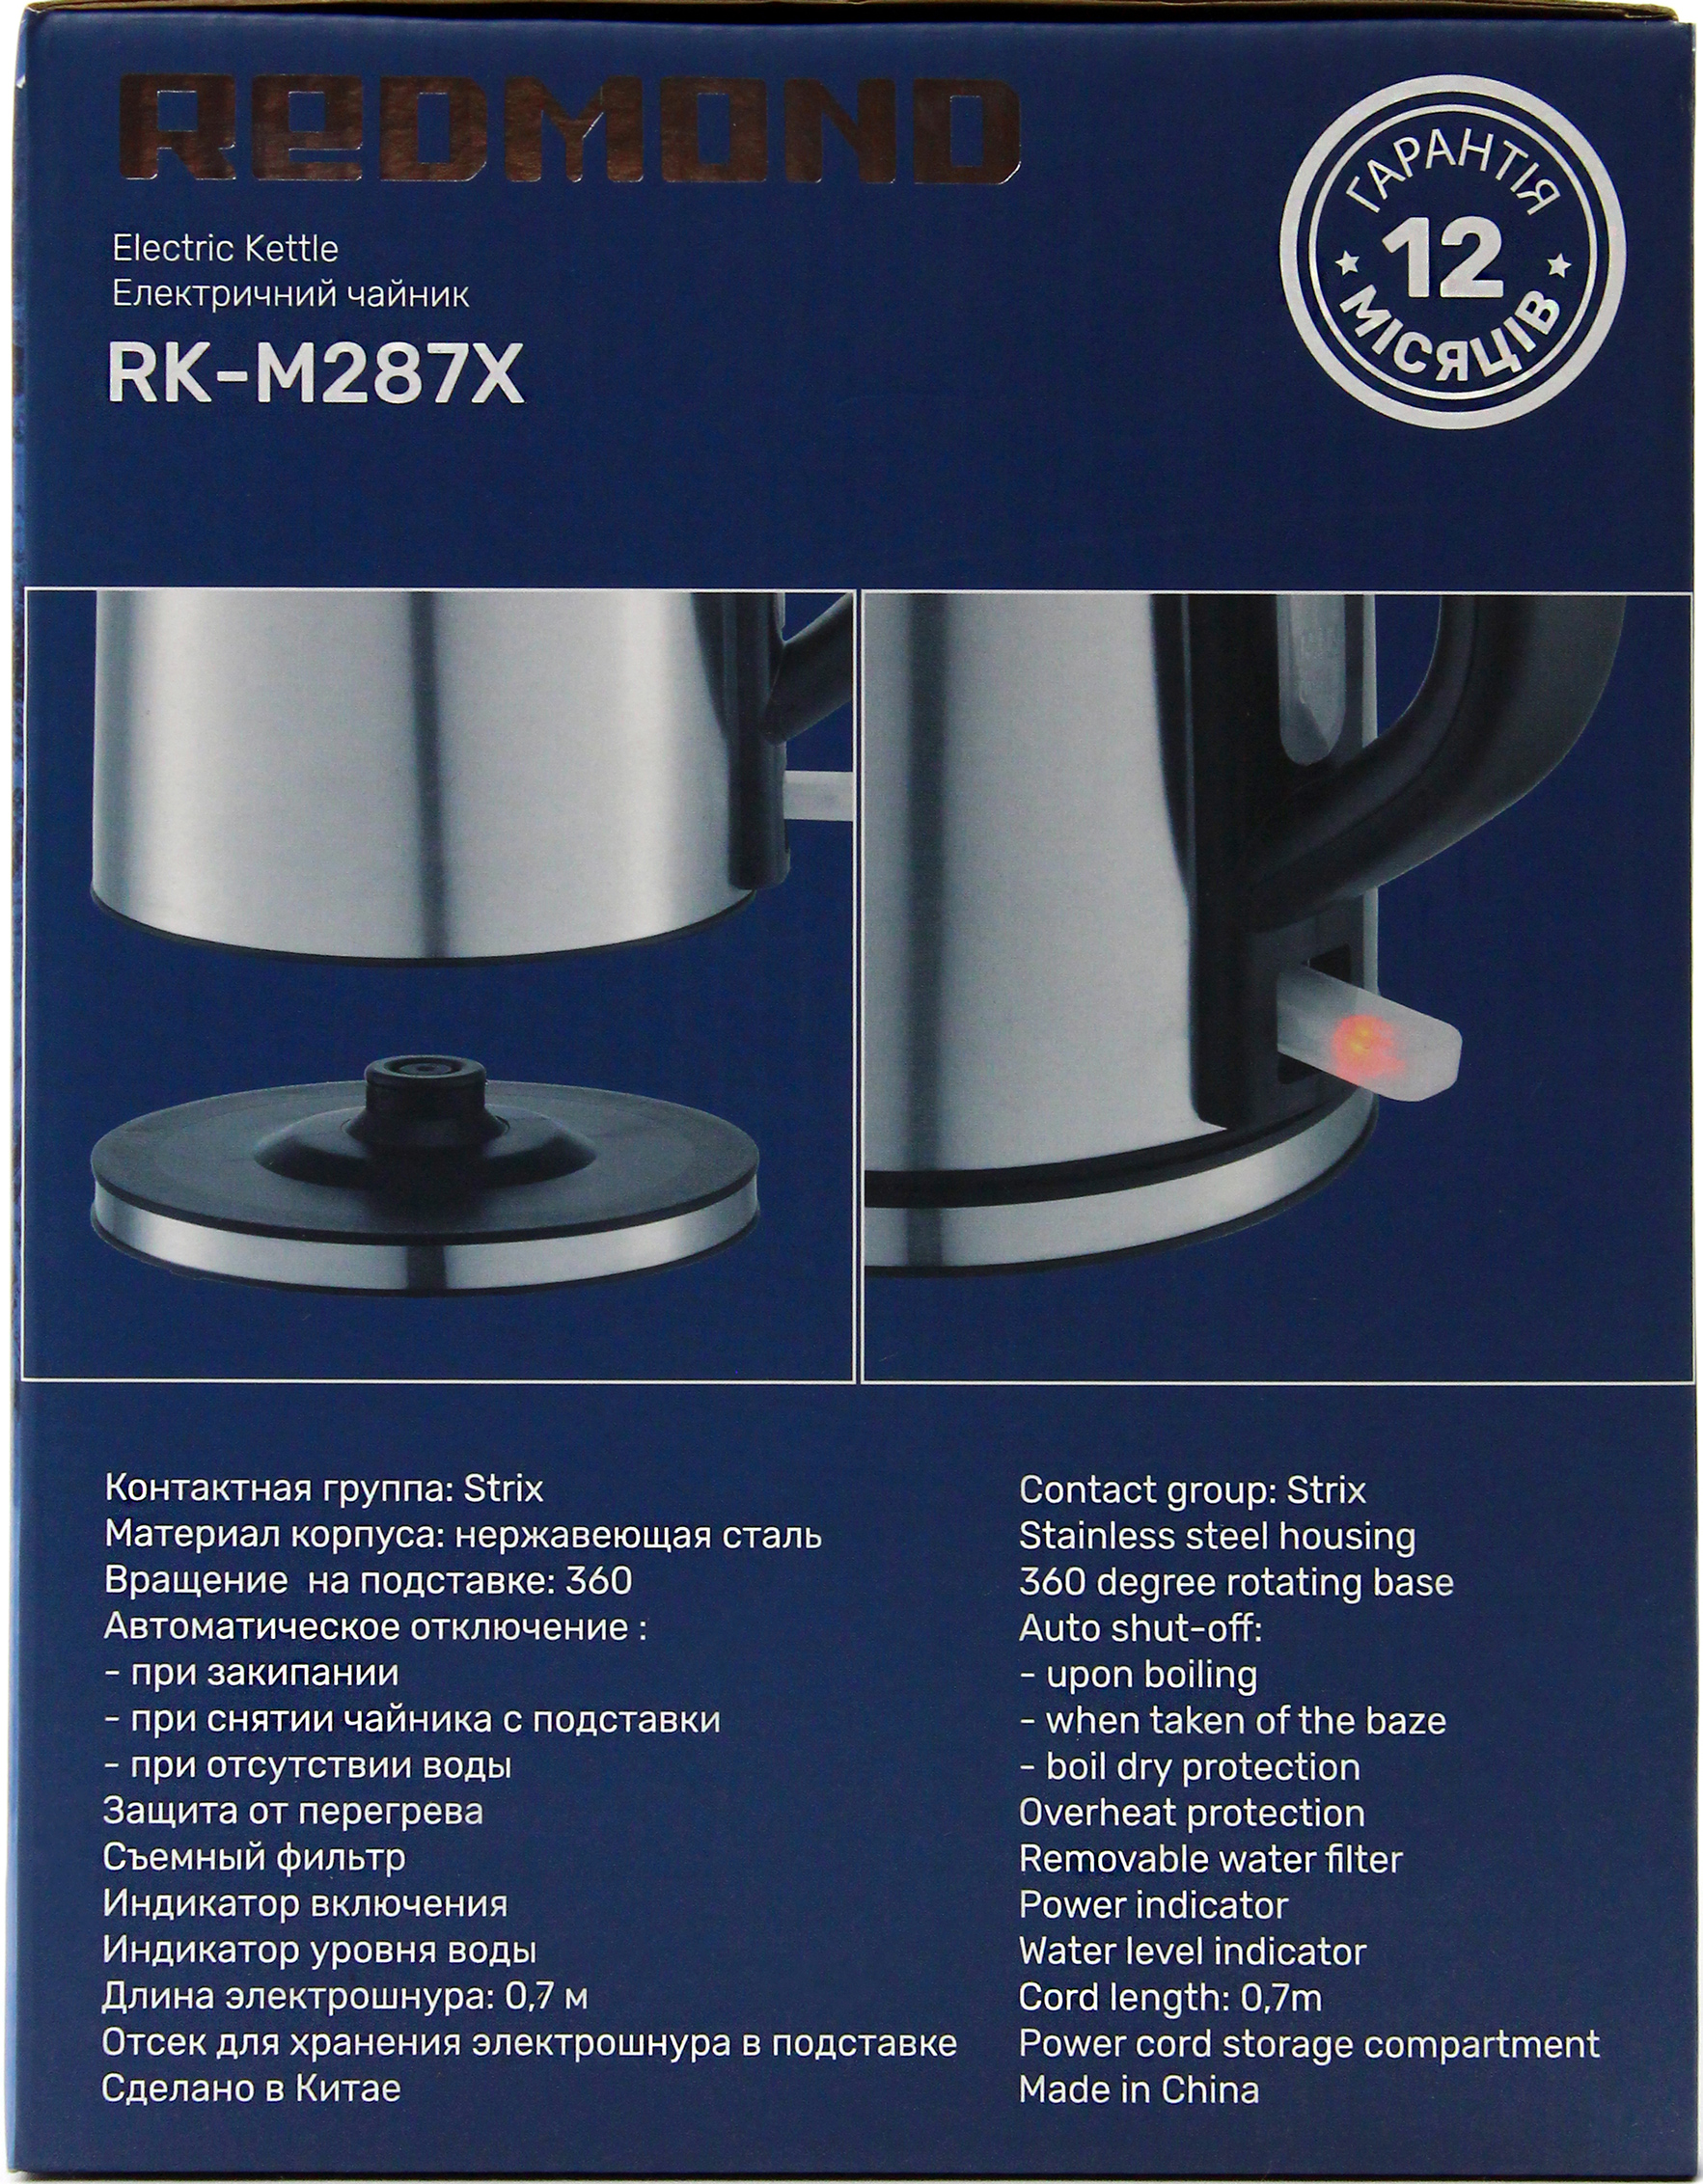 Електрочайник Redmond RK-M287X характеристики - фотографія 7